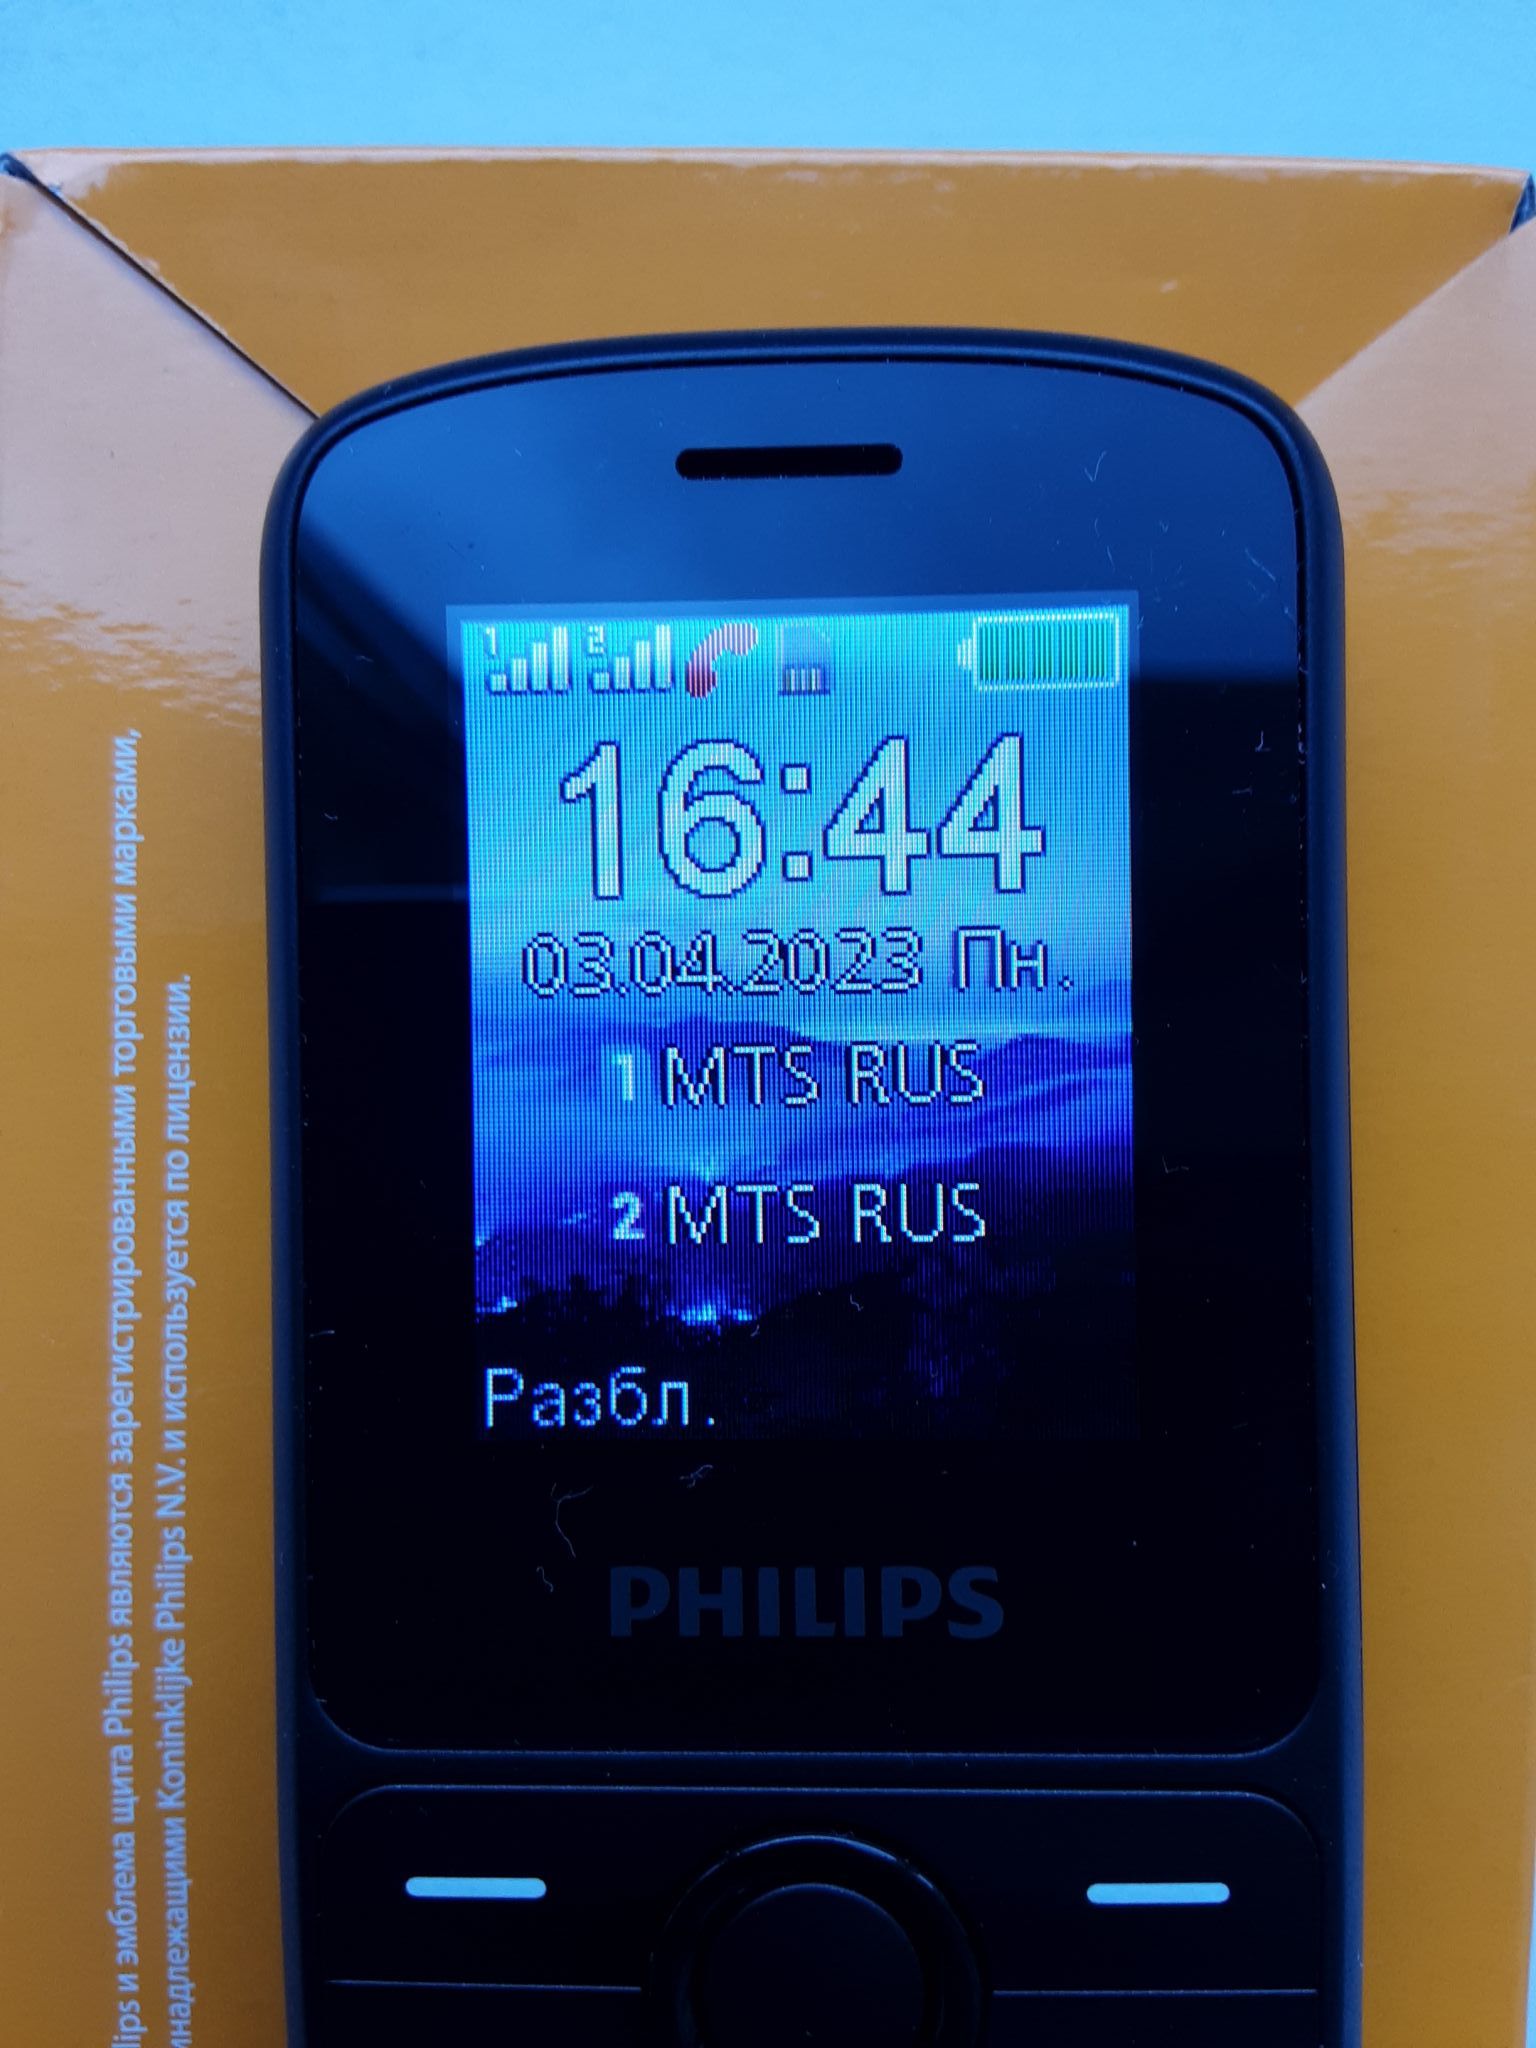 Мобильный телефон Philips Xenium E2101 Черный 8712581799687 — купить в  интернет-магазине ОНЛАЙН ТРЕЙД.РУ